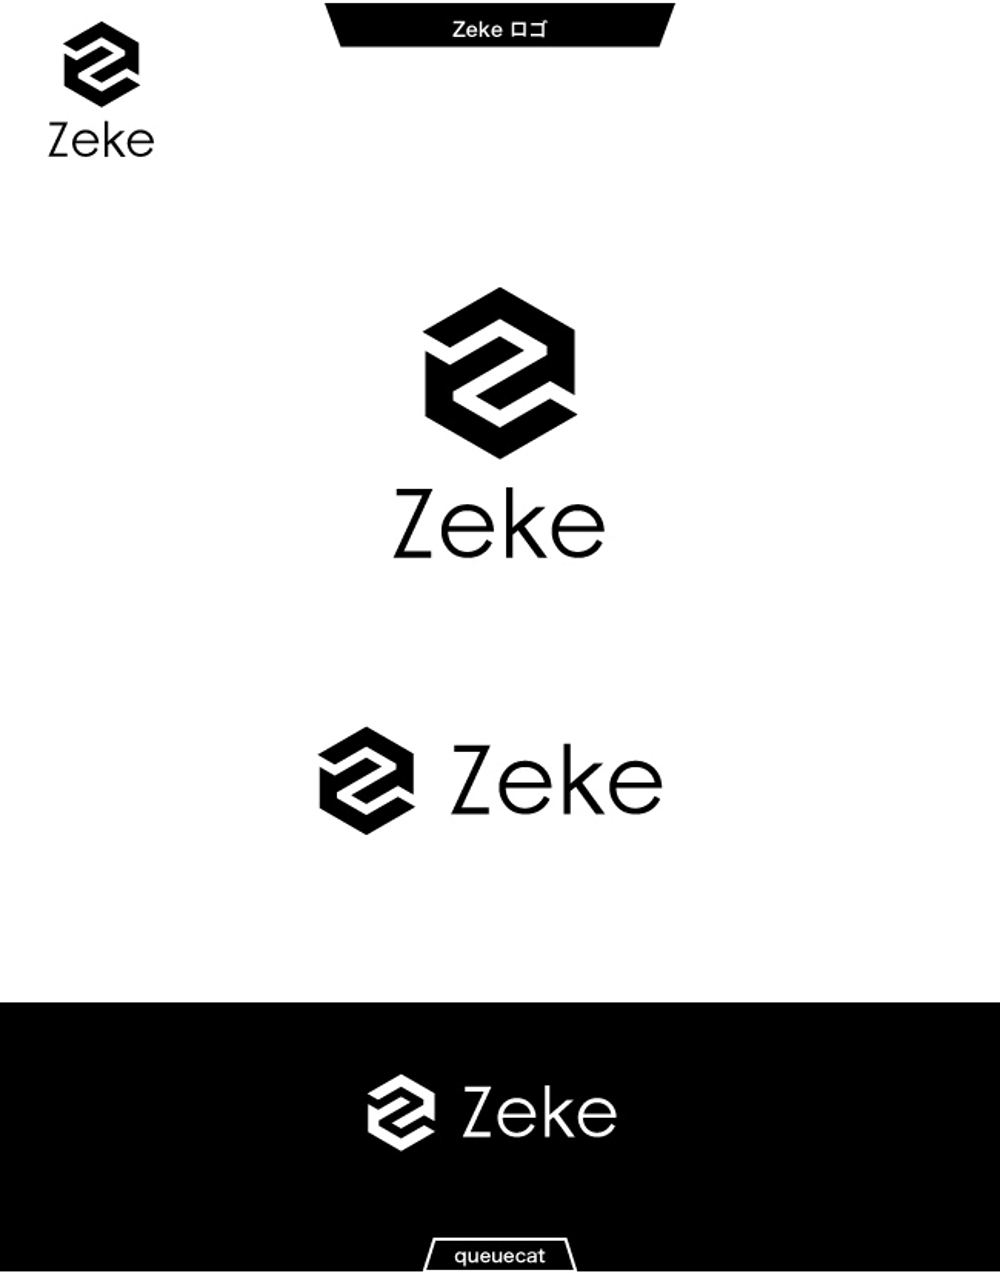 Zeke1_1.jpg